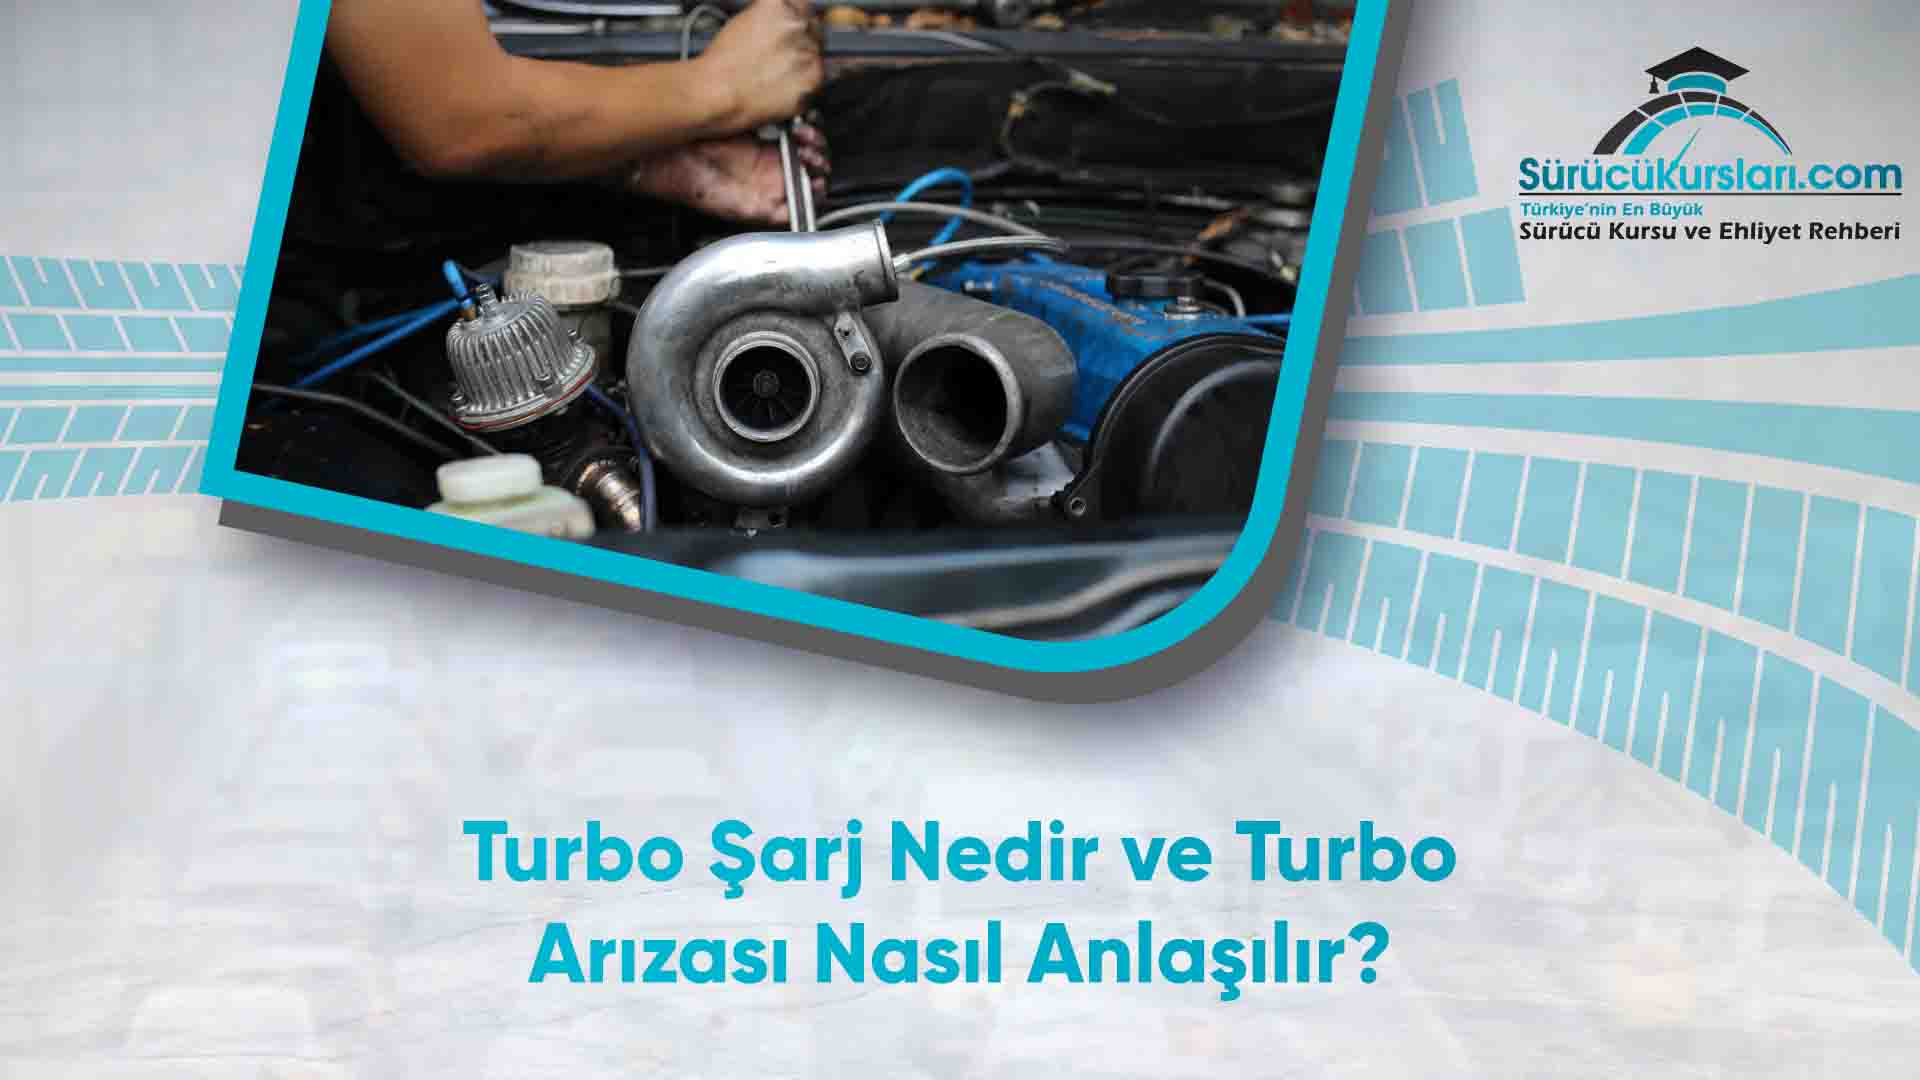 Turbo Şarj Nedir ve Turbo Arızası Nasıl Anlaşılır